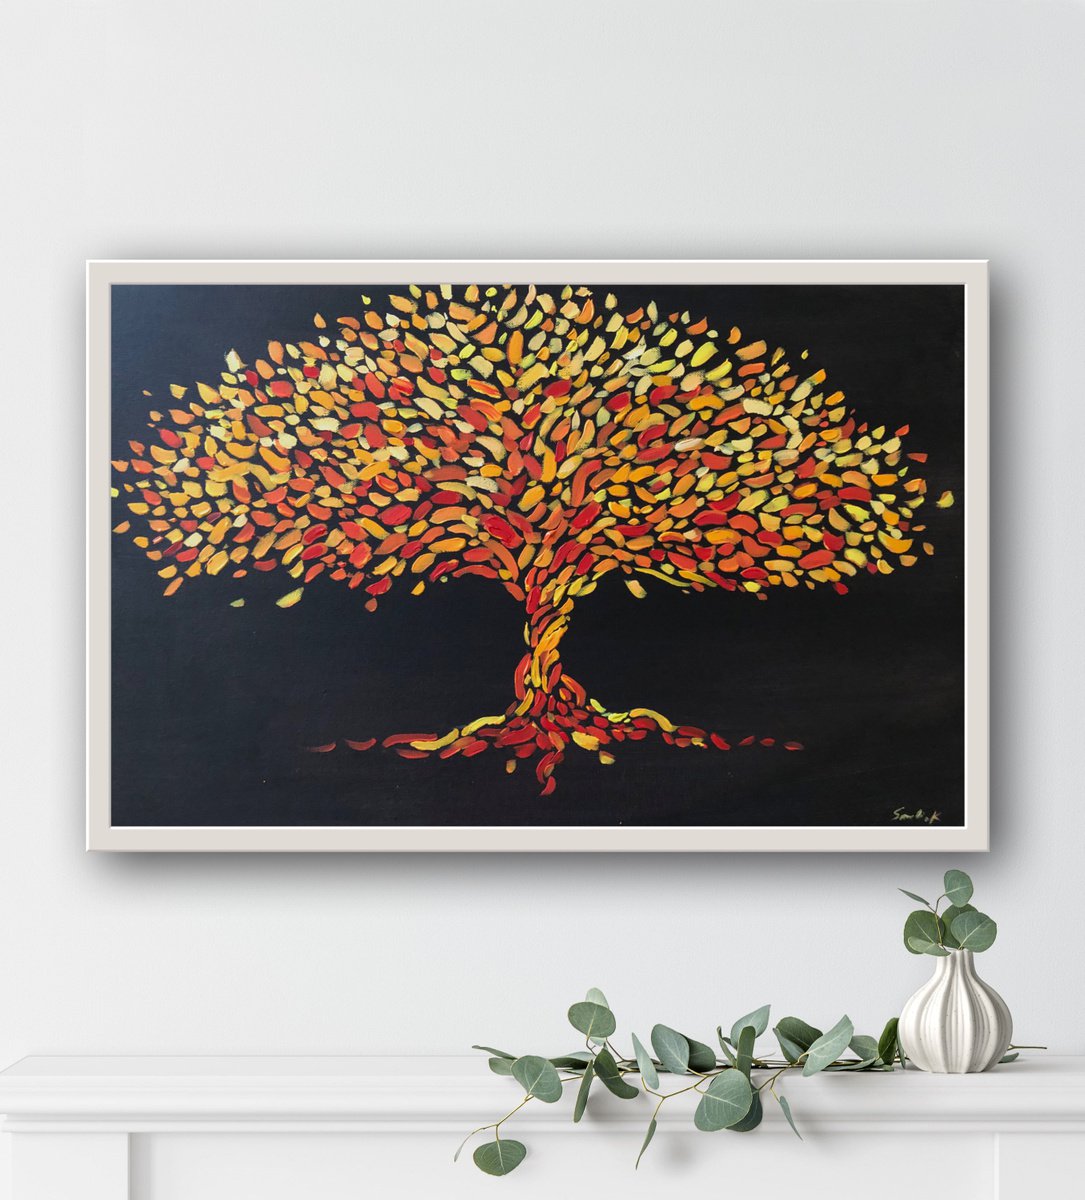 Tree of life 40-60cm by Volodymyr Smoliak